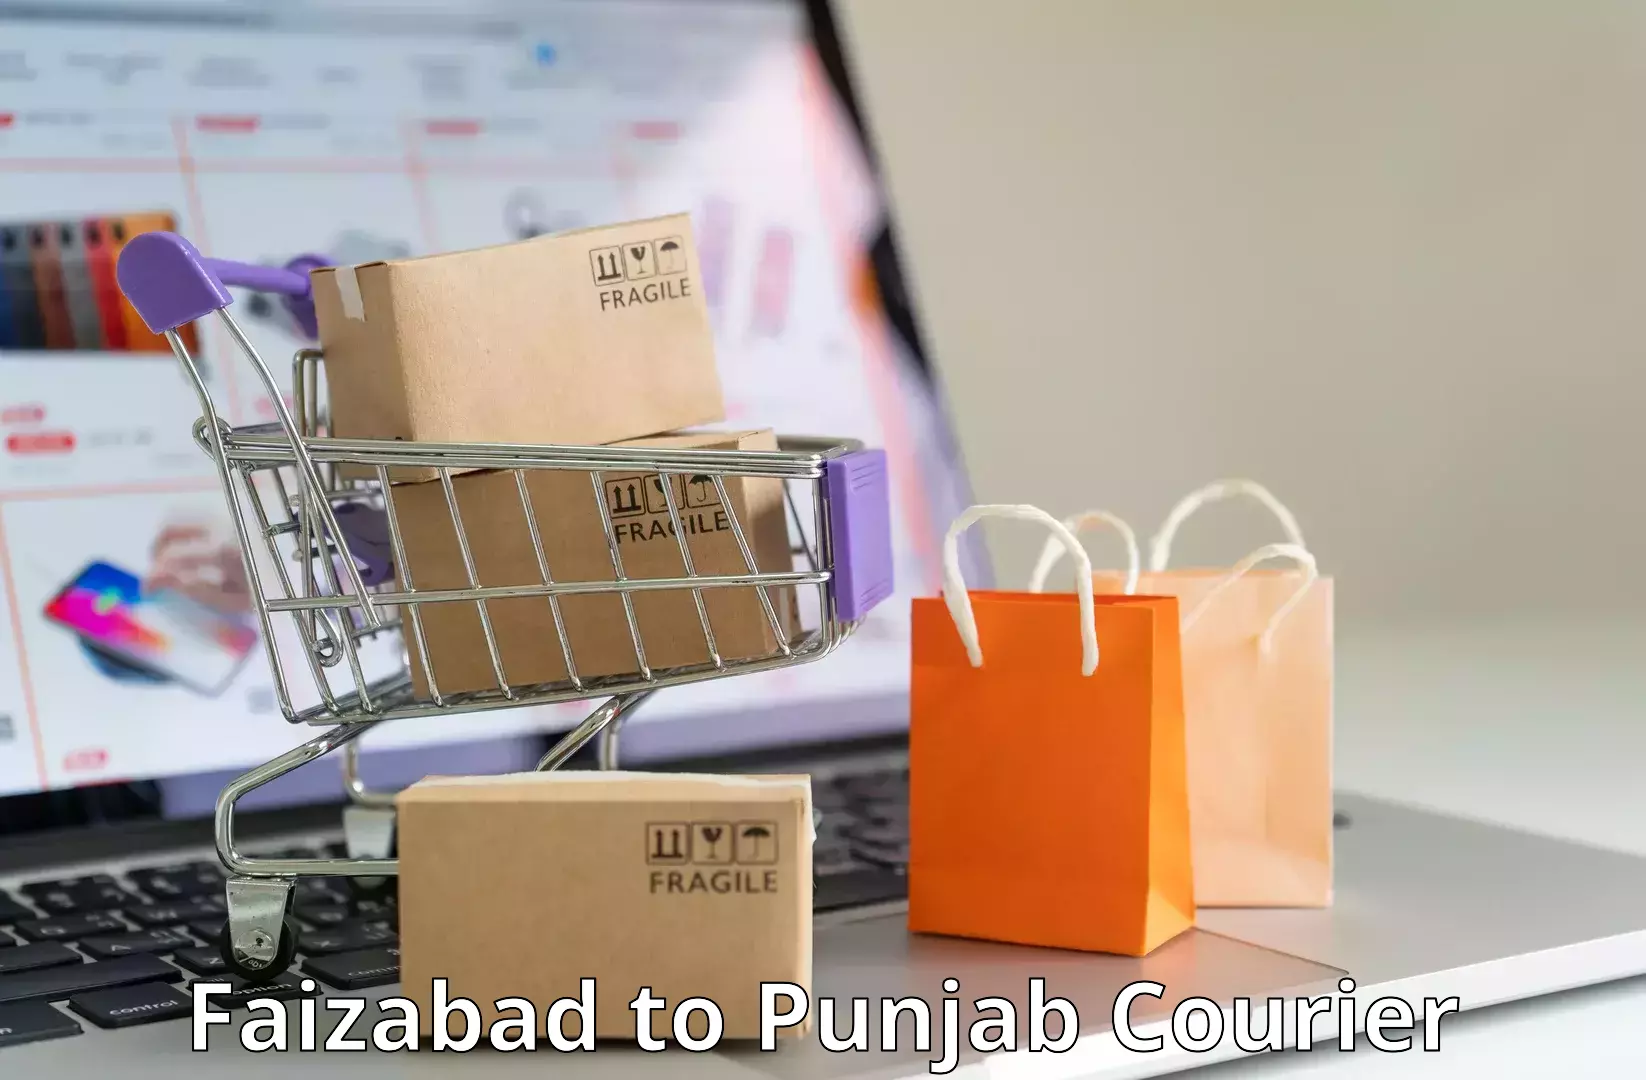 Enhanced delivery experience Faizabad to Faridkot